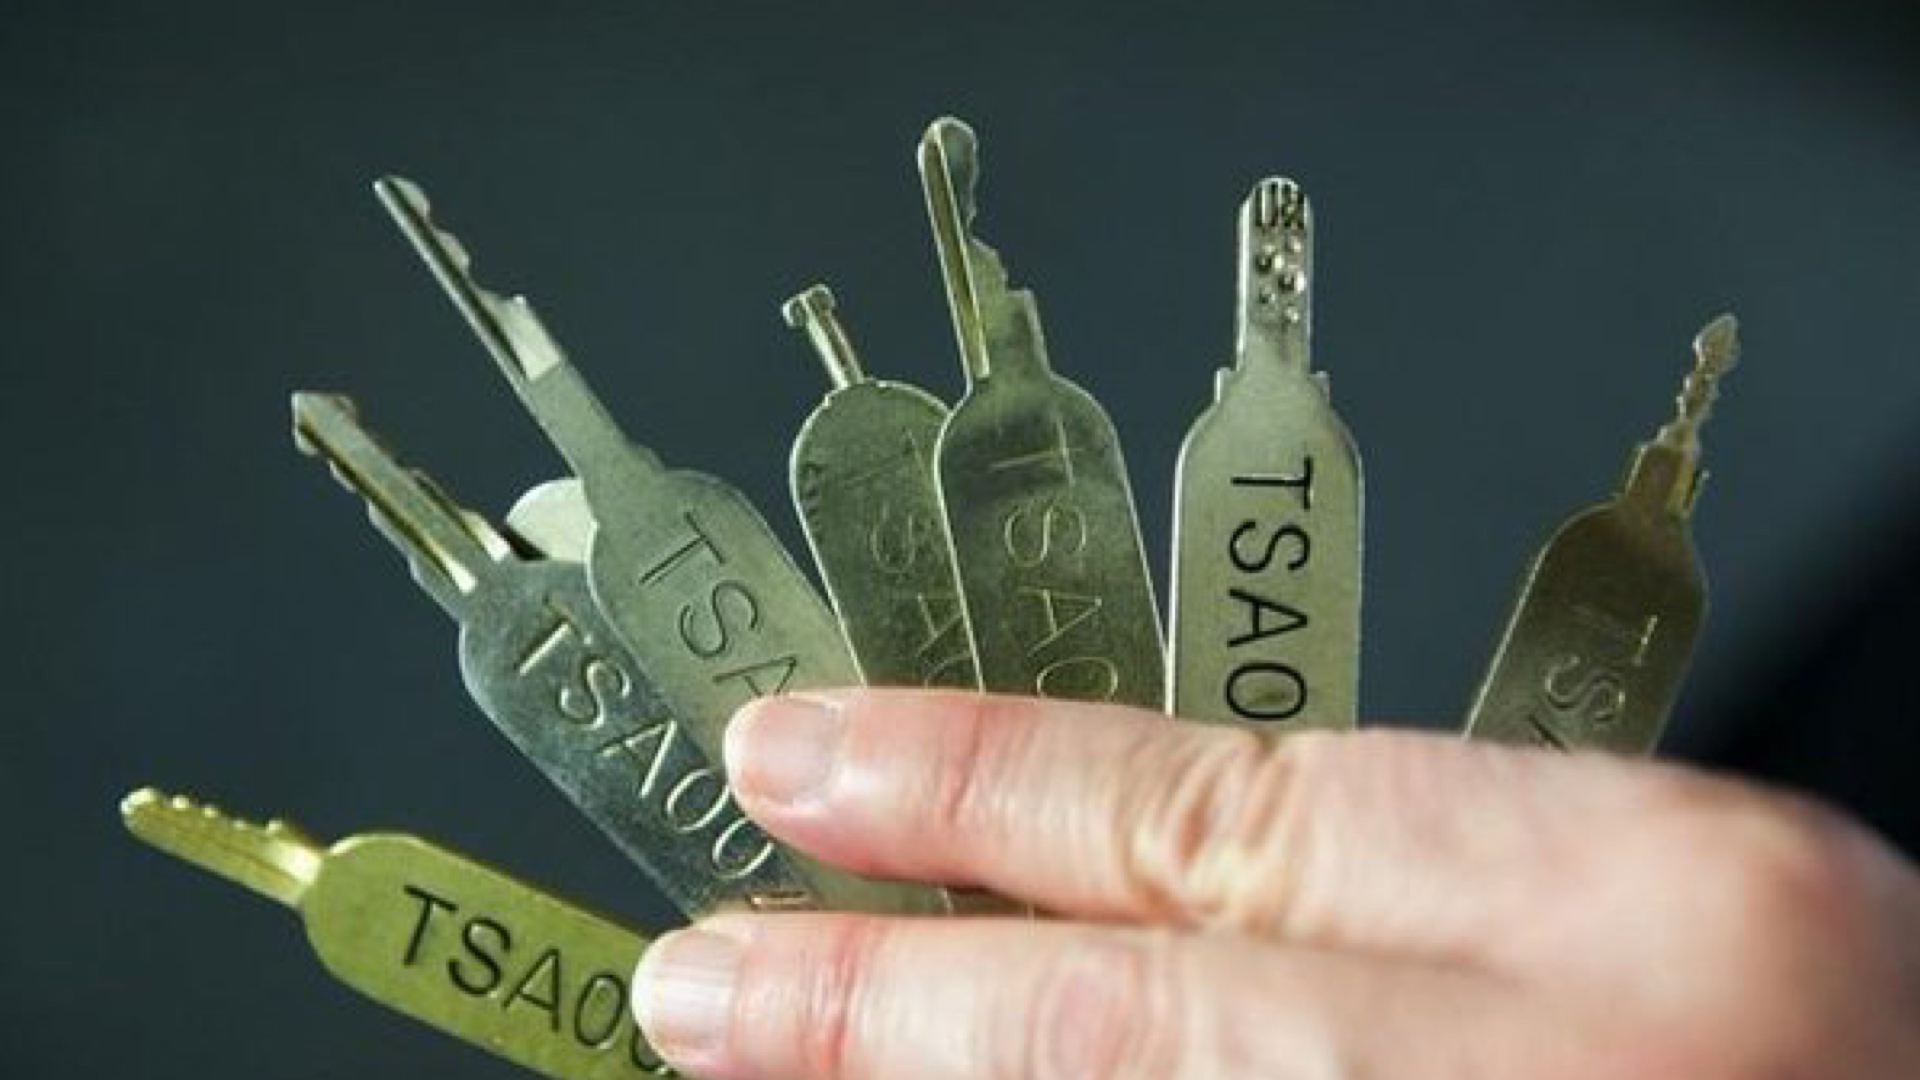 TSA Keys